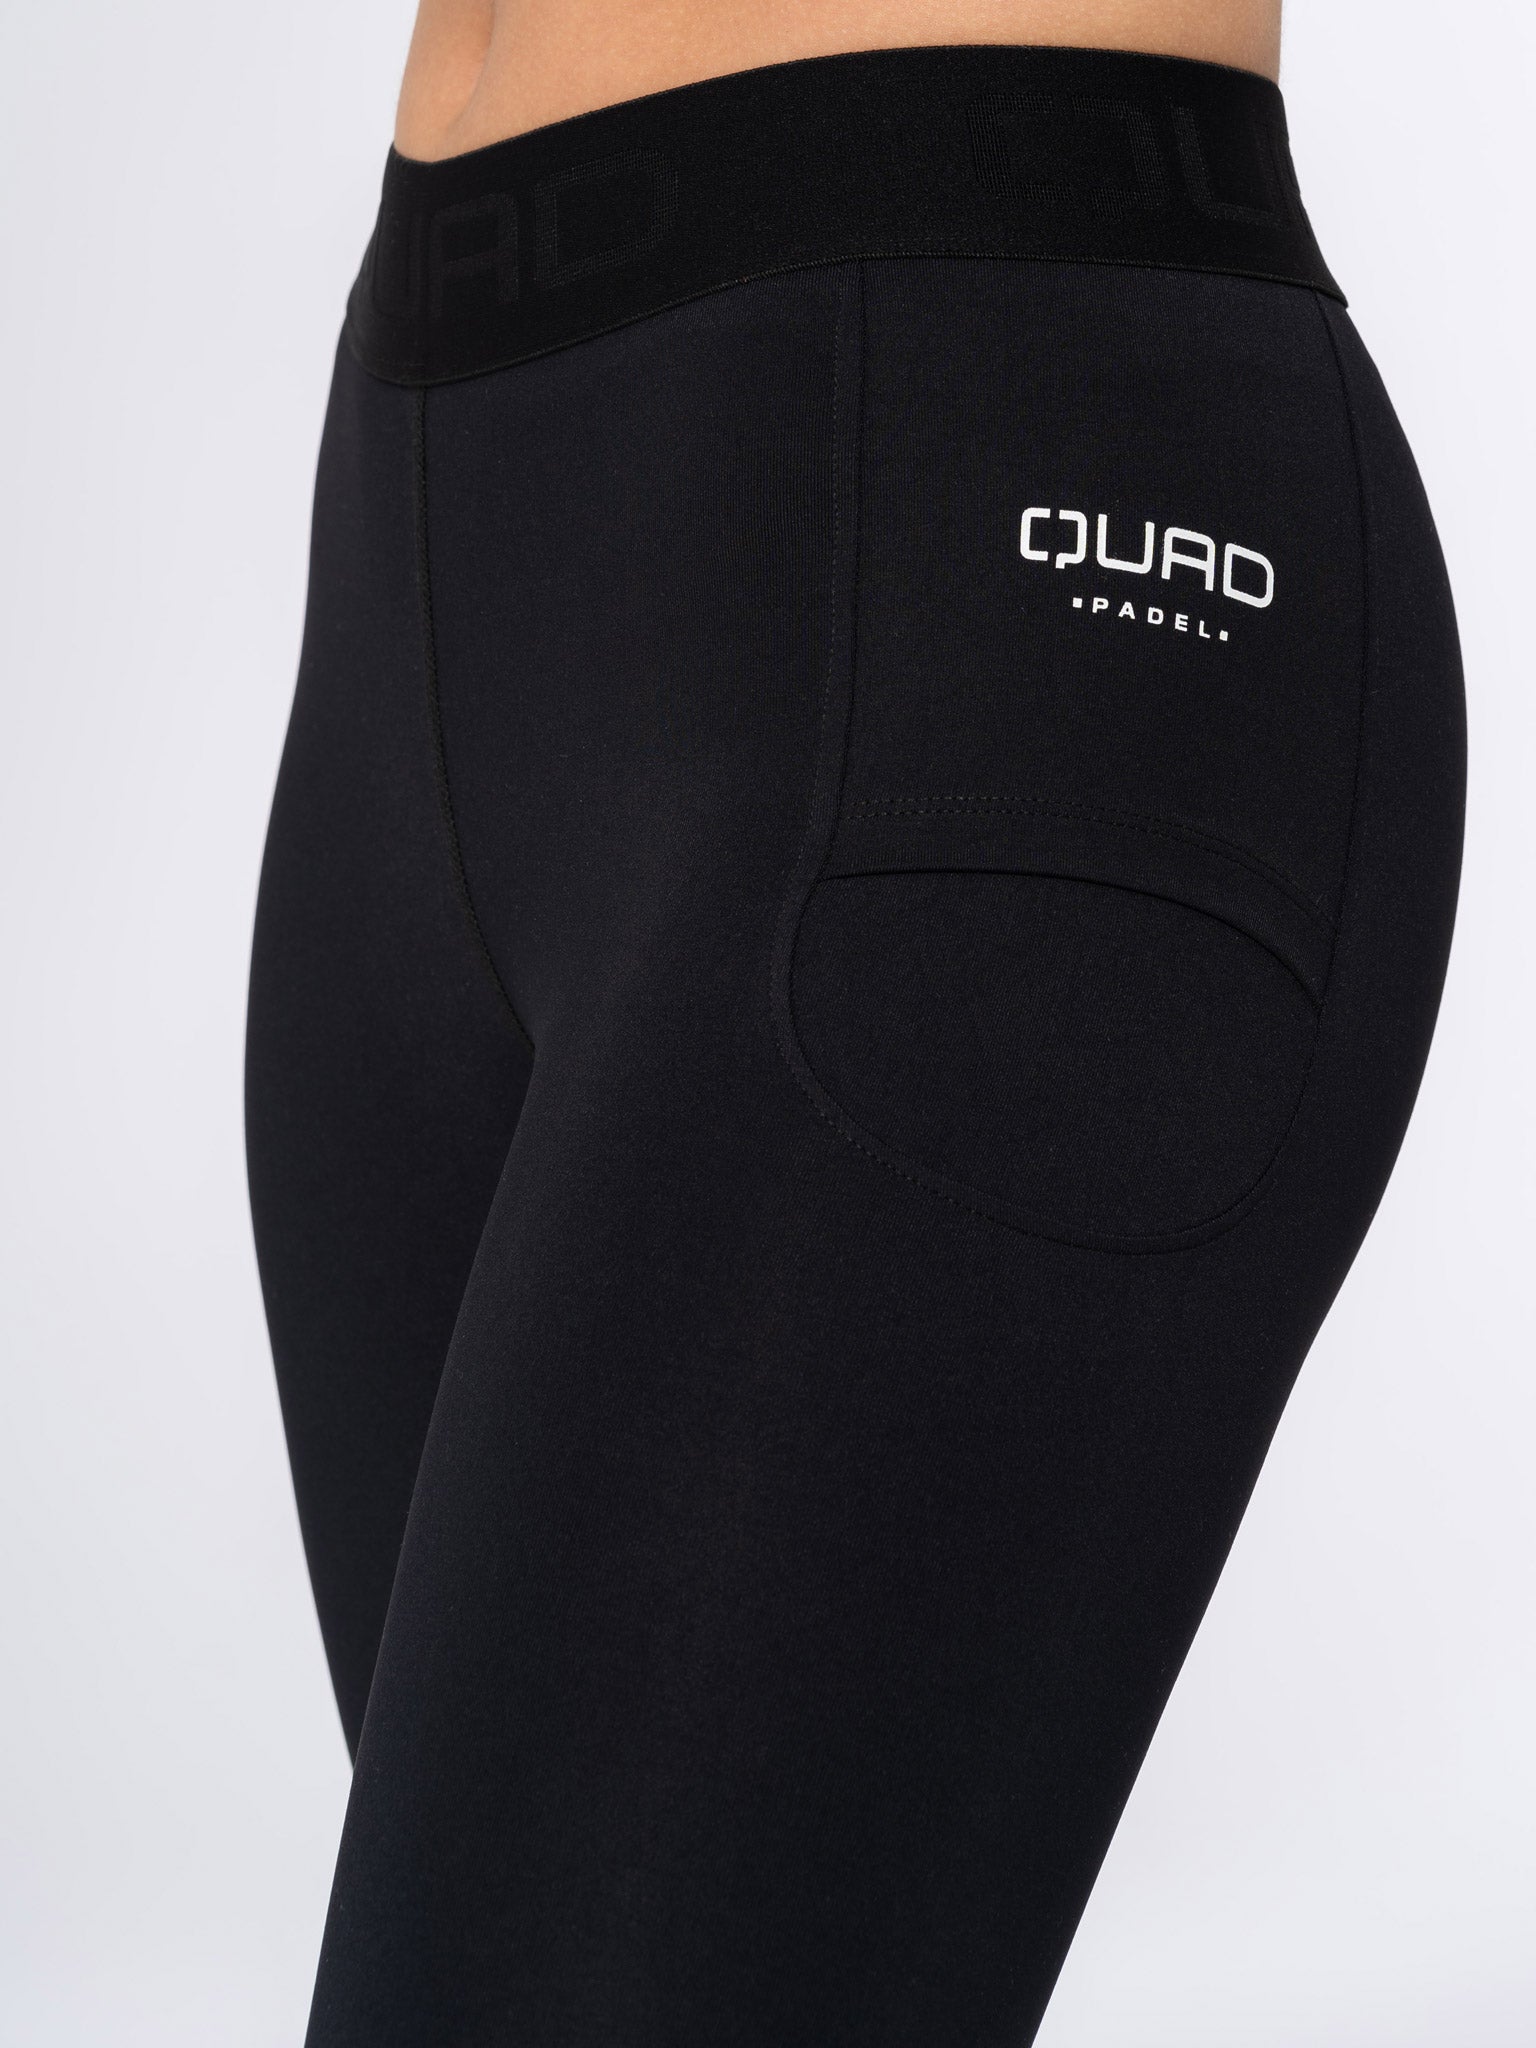 https://quadpadel.com/cdn/shop/products/Quad-Womens-Padel-tights4.jpg?v=1613581146&width=1536